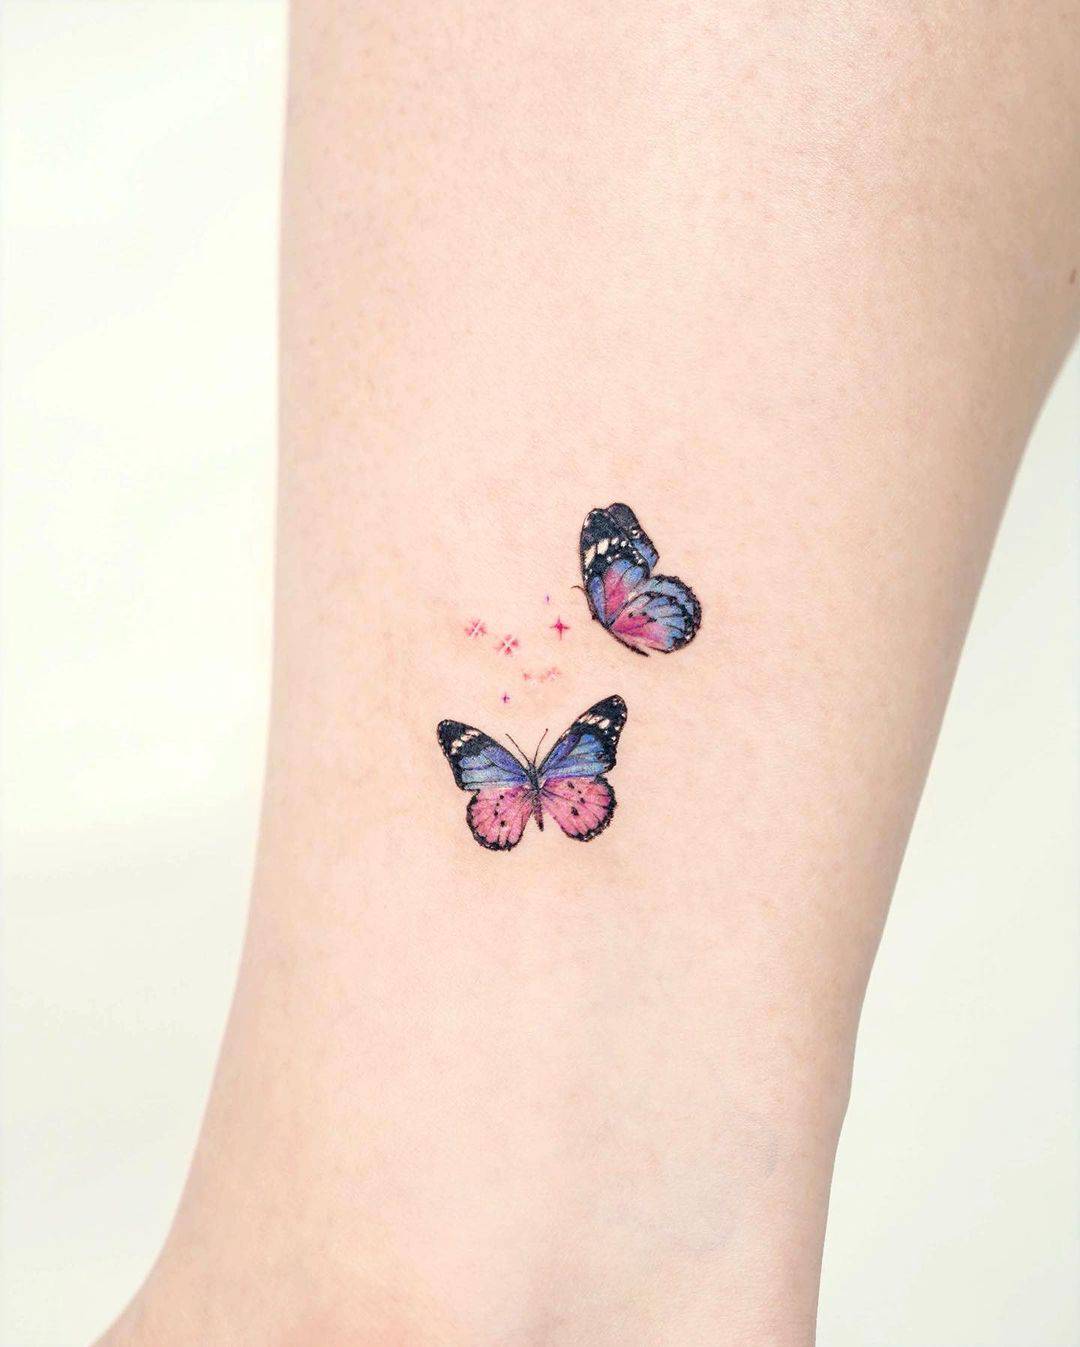 Mini Star tattoo with butterfly tattoo by tilda tattoo